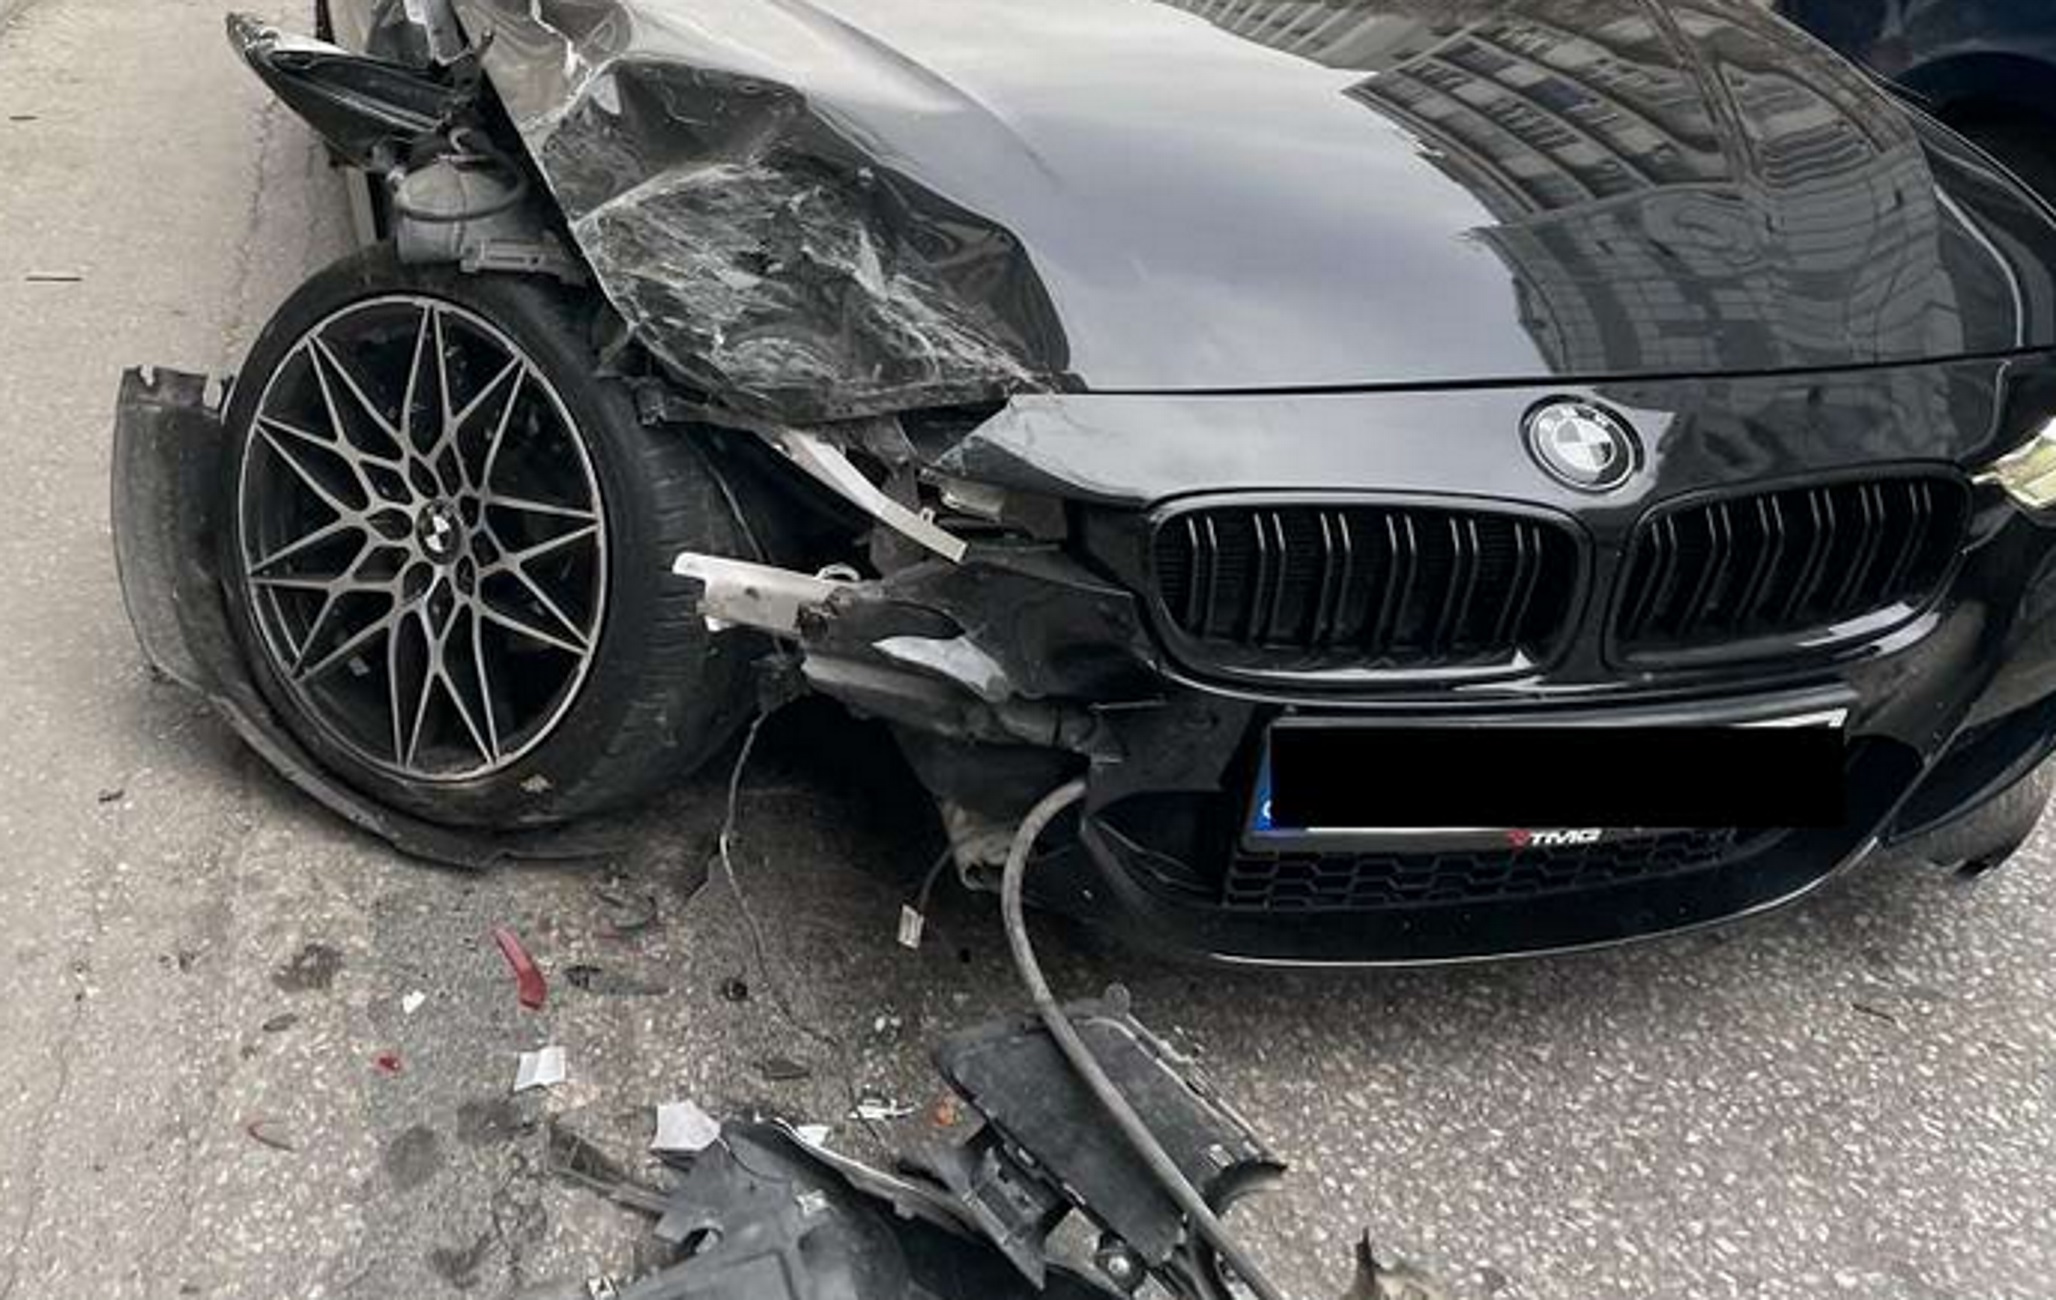 Θεσσαλονίκη: Σμπαράλια η πανάκριβη BMW σε τροχαίο στην Τσιμισκή – Οι εικόνες από το σημείο